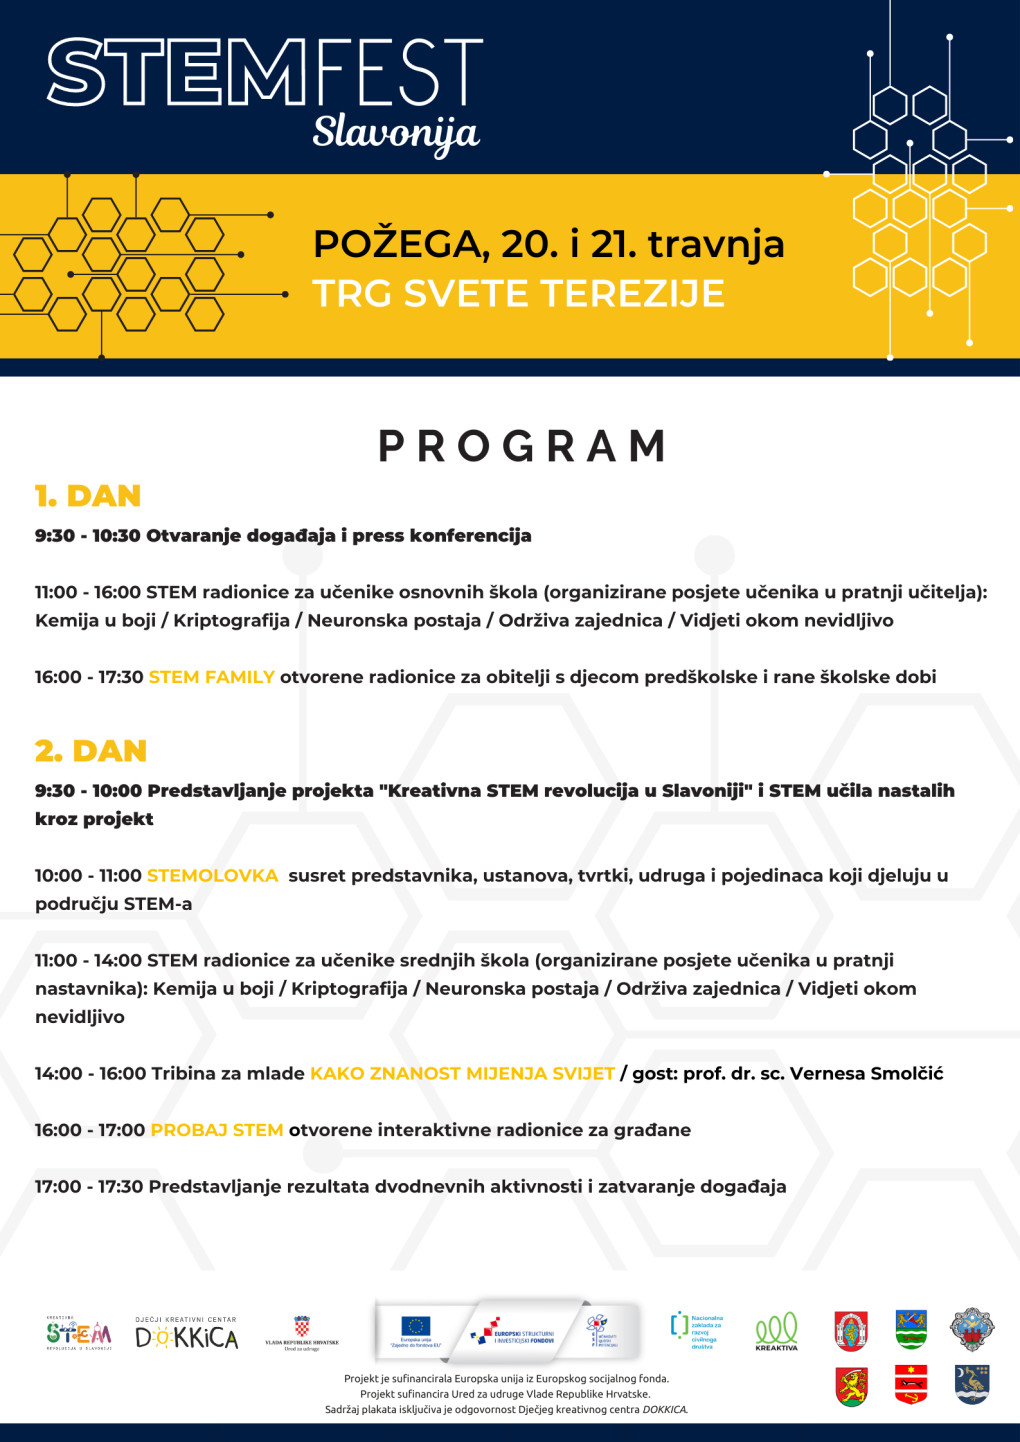 STEM FEST Slavonija 20. i 21. travnja u Požegi